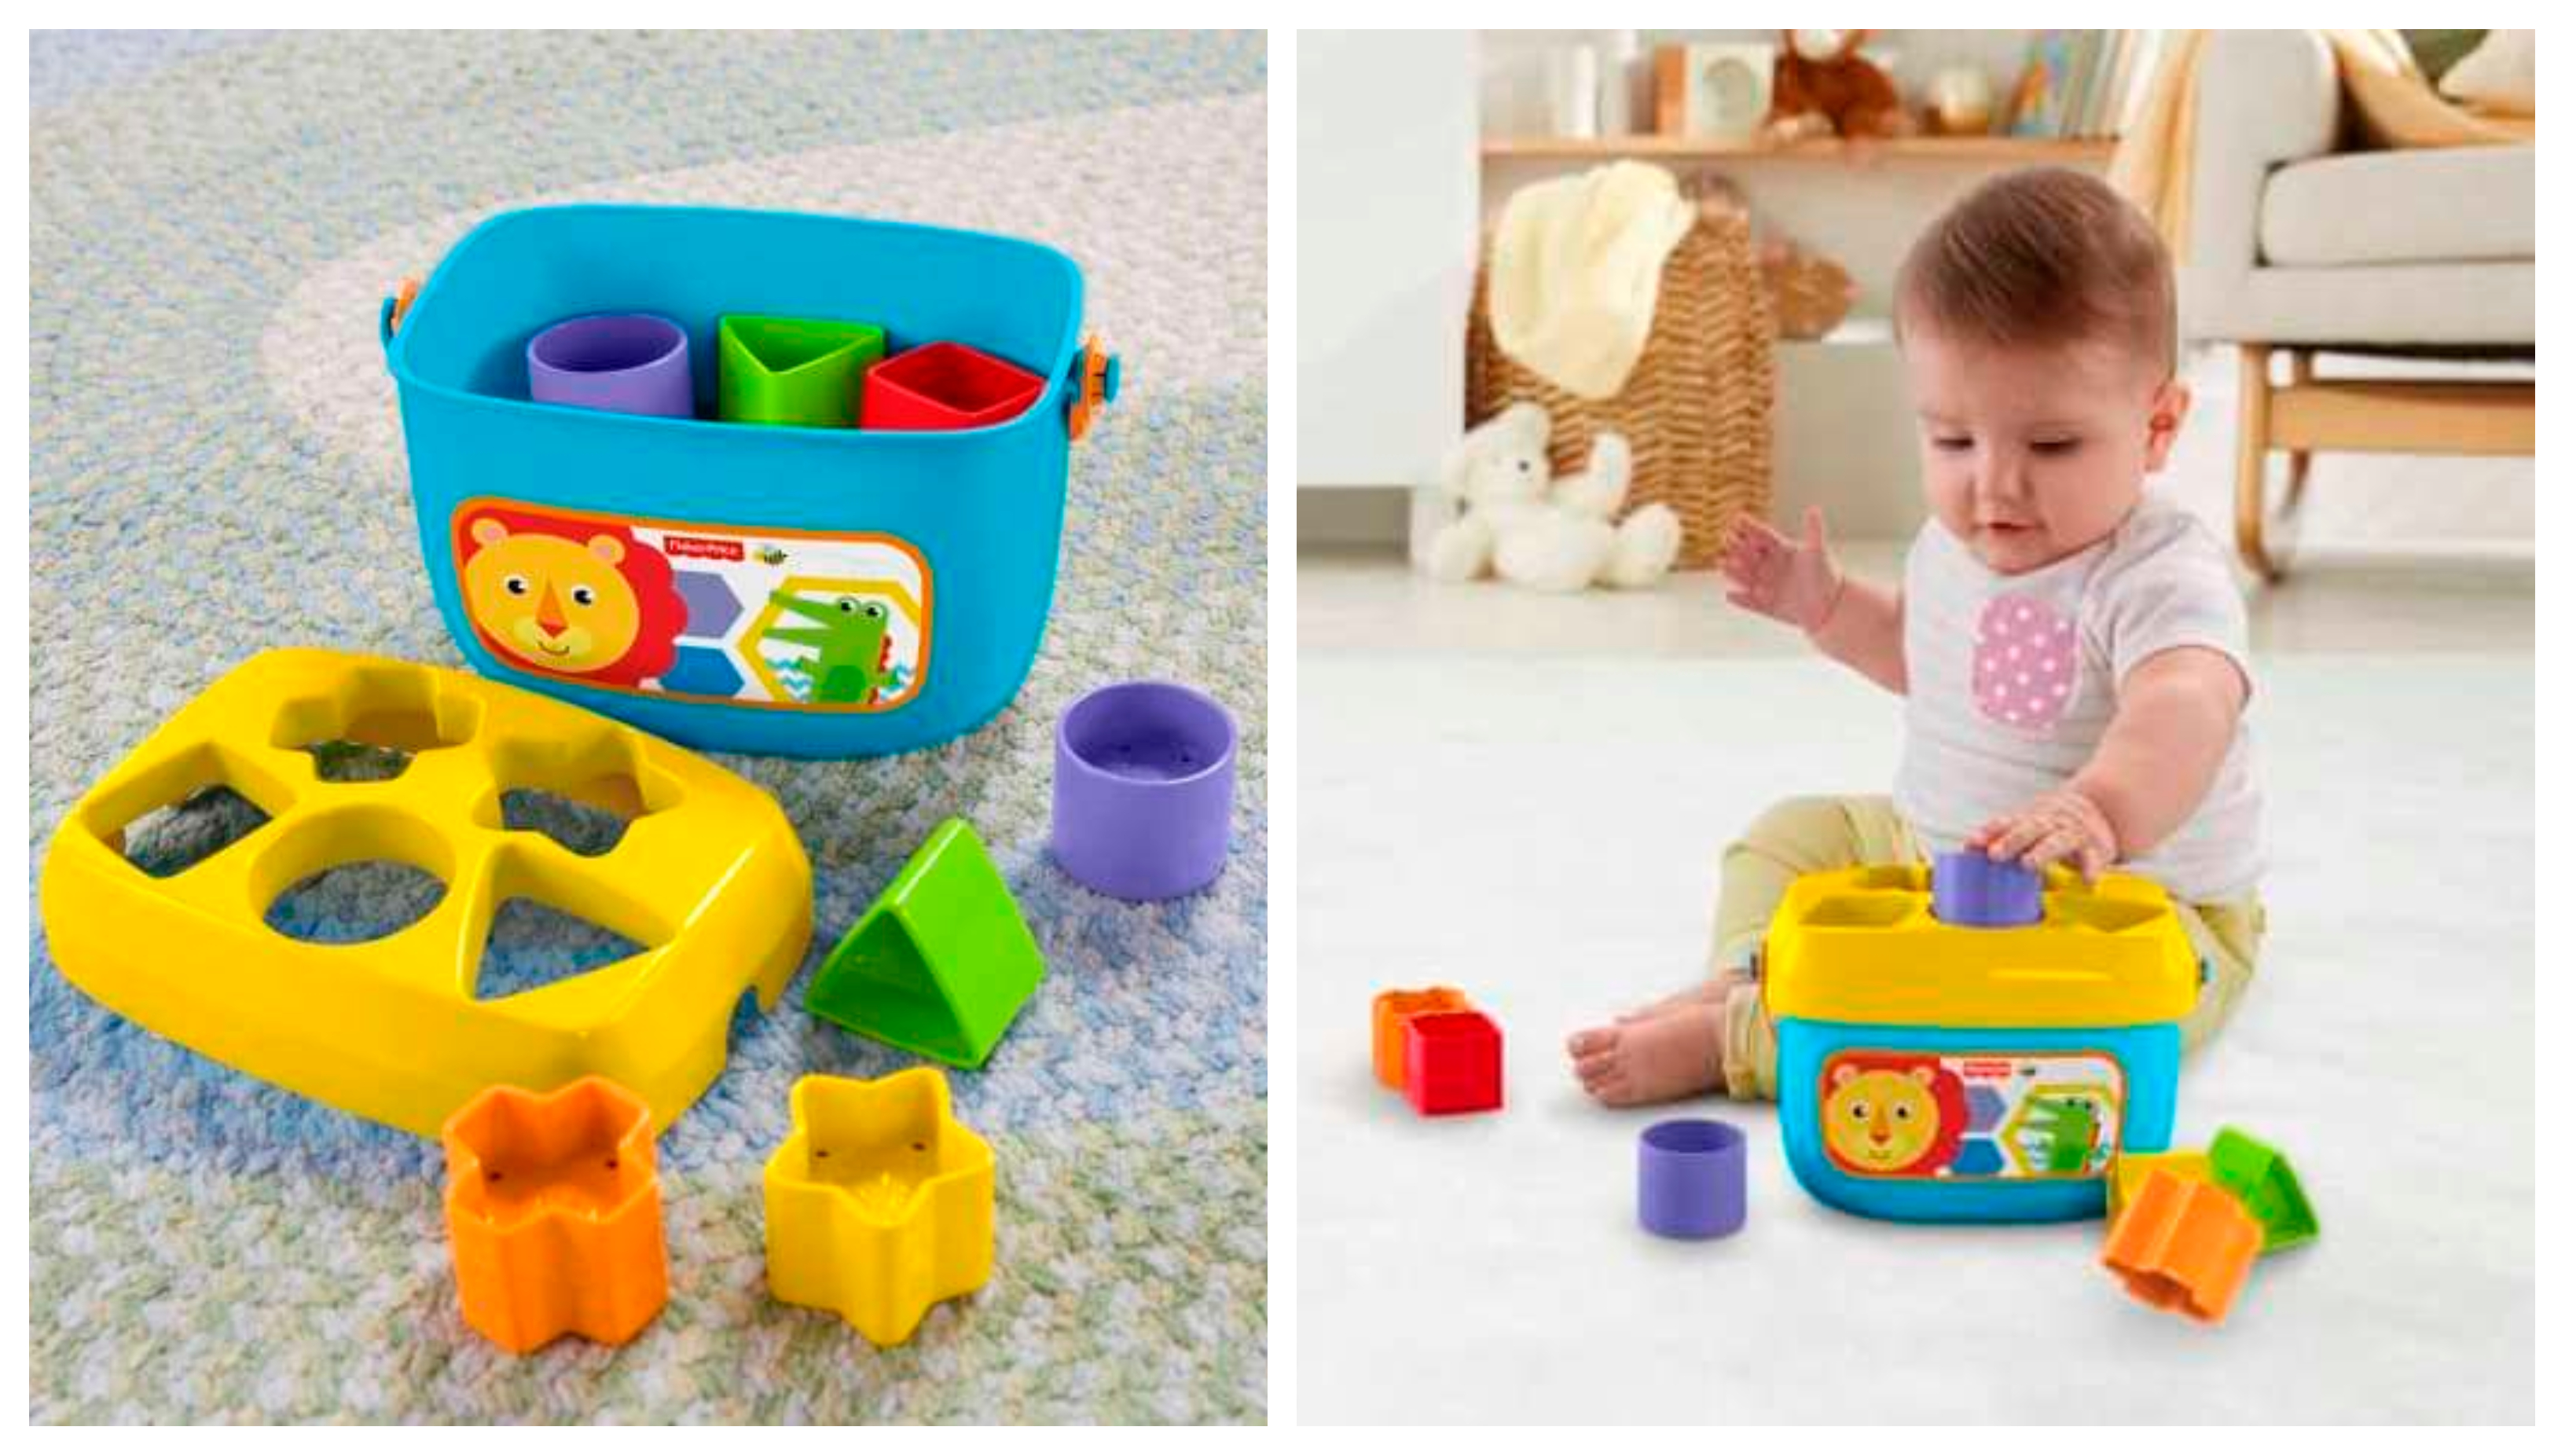 Prvé vkladacie puzzle Fisher-Price Baby's First Blocks sú vhodné pre deti od 6 mesiacov, ktoré rozvíjajú základné znalosti, zmyslové vnímanie, schopnosť riešiť úlohy aj dôveru v seba samého.